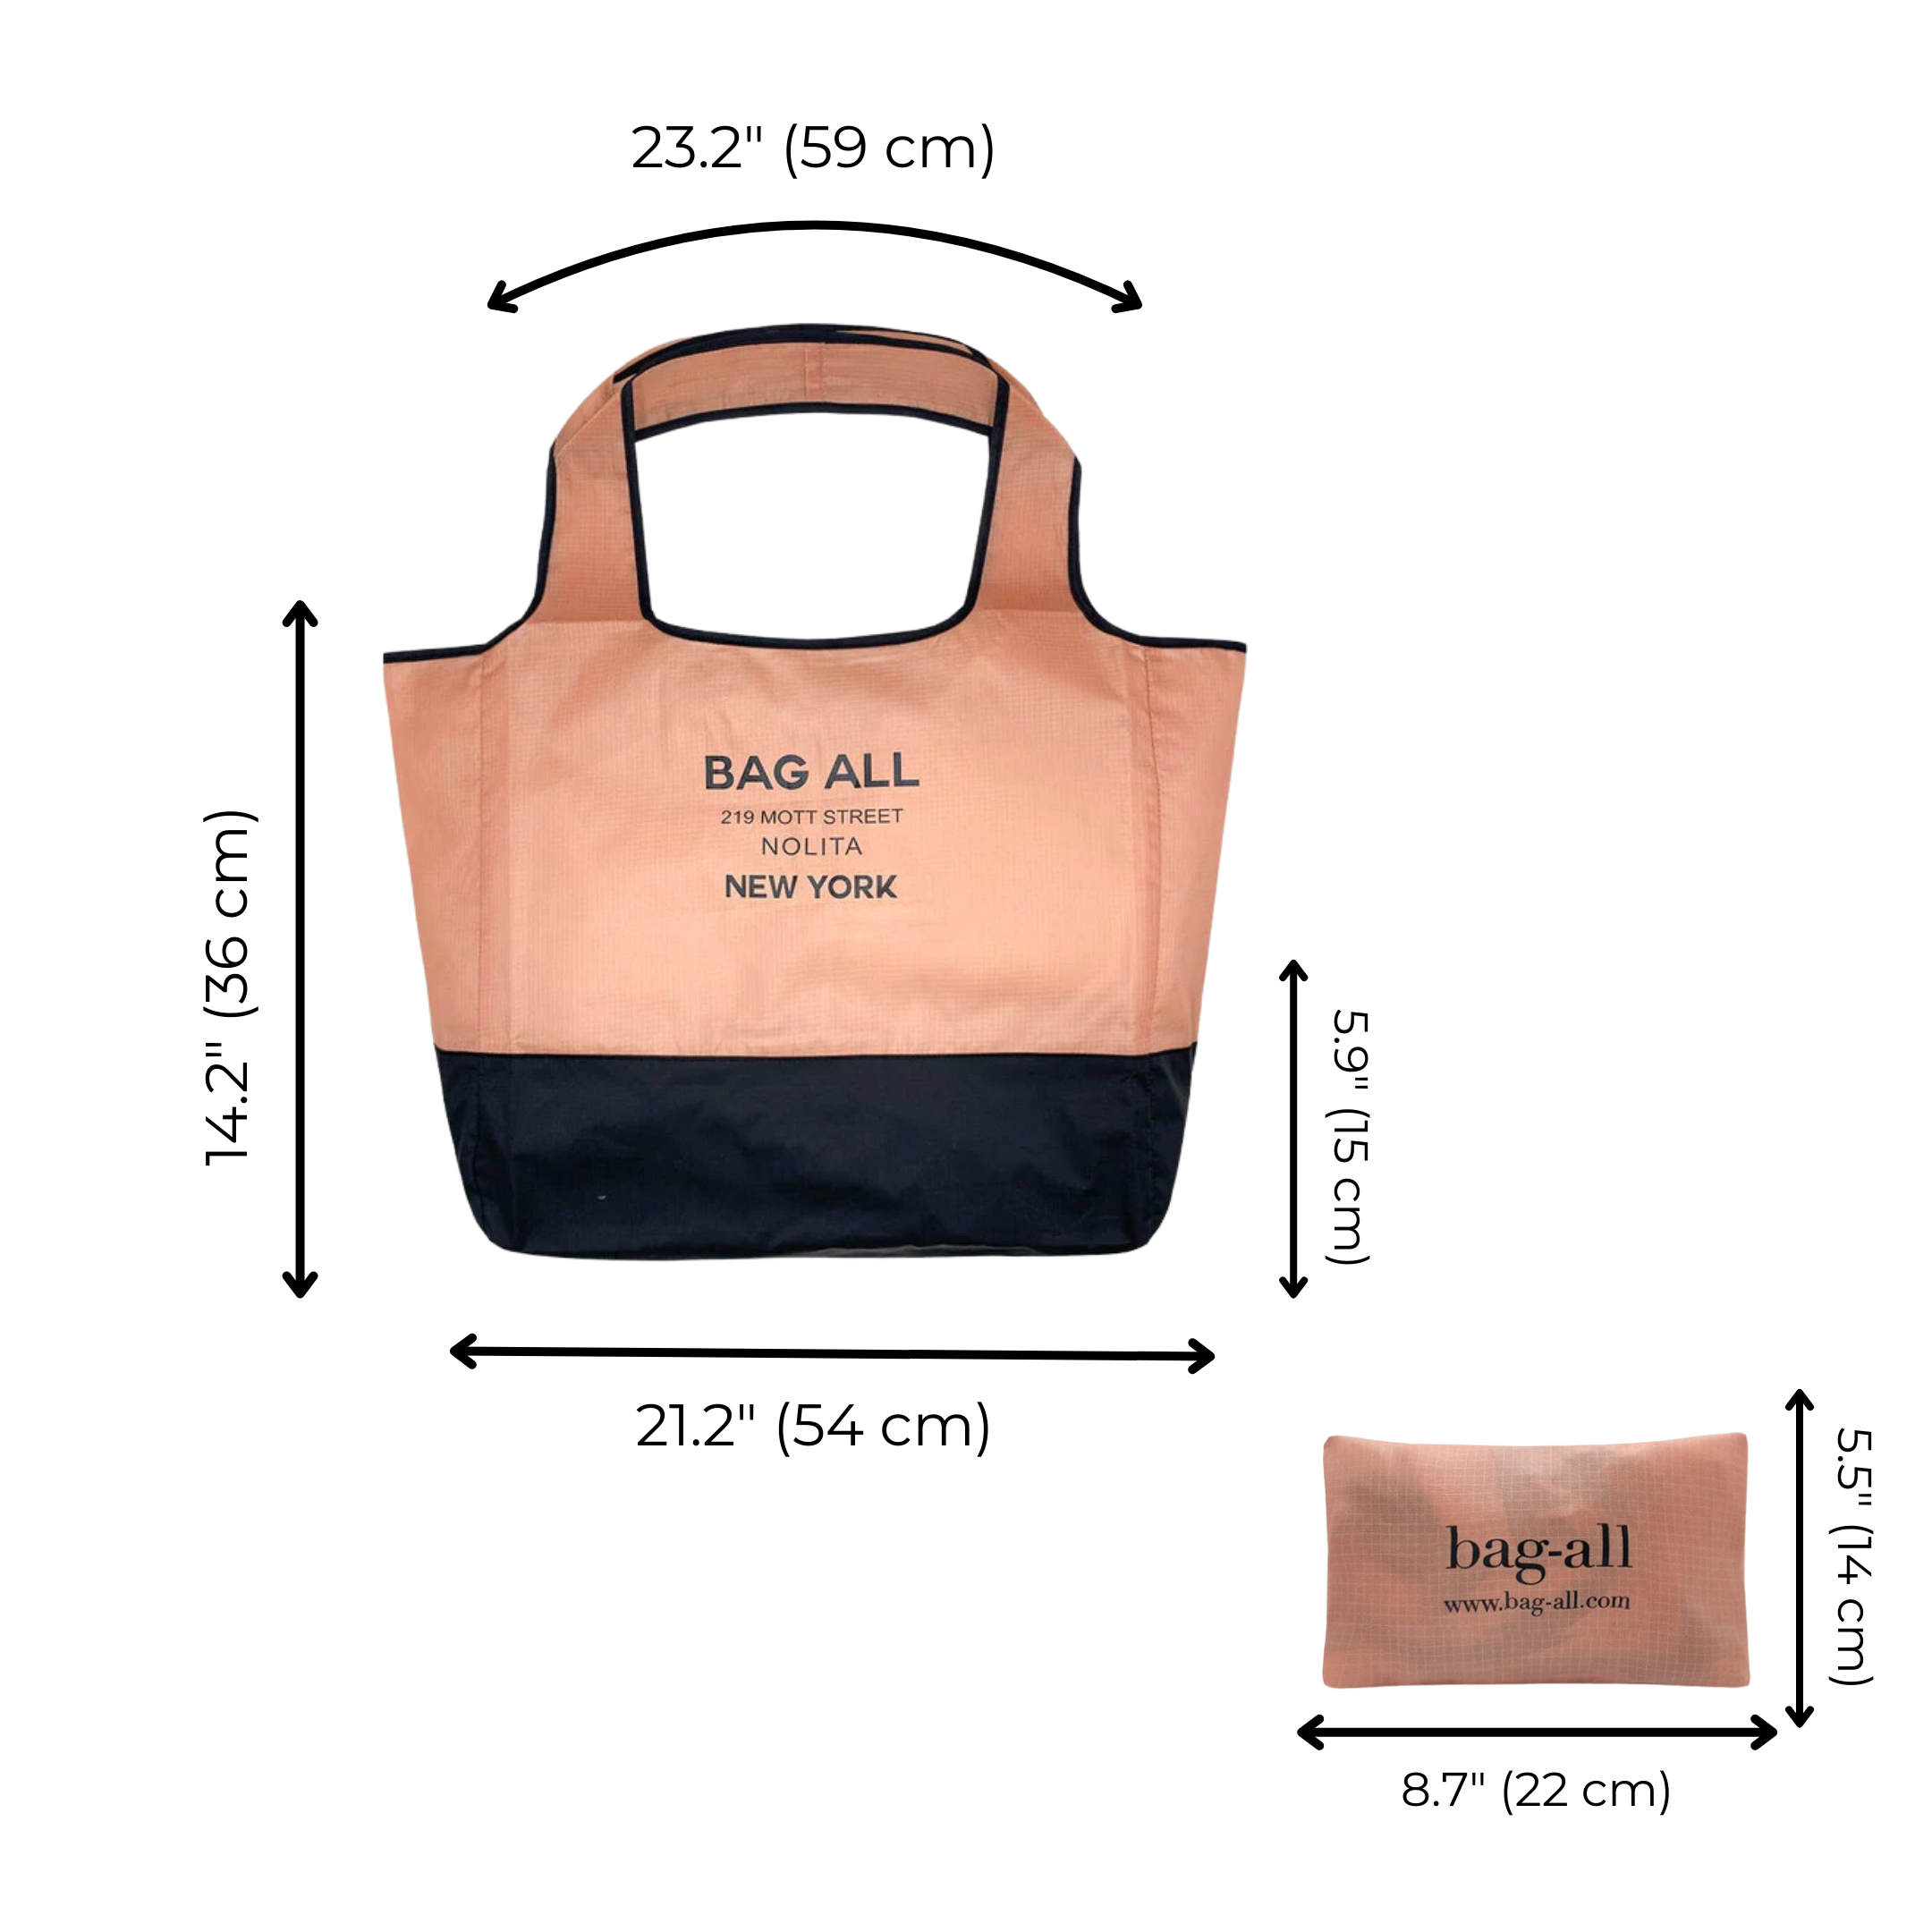 Folding Shopping Bag, Zipper Pocket Pouch | Bag-all